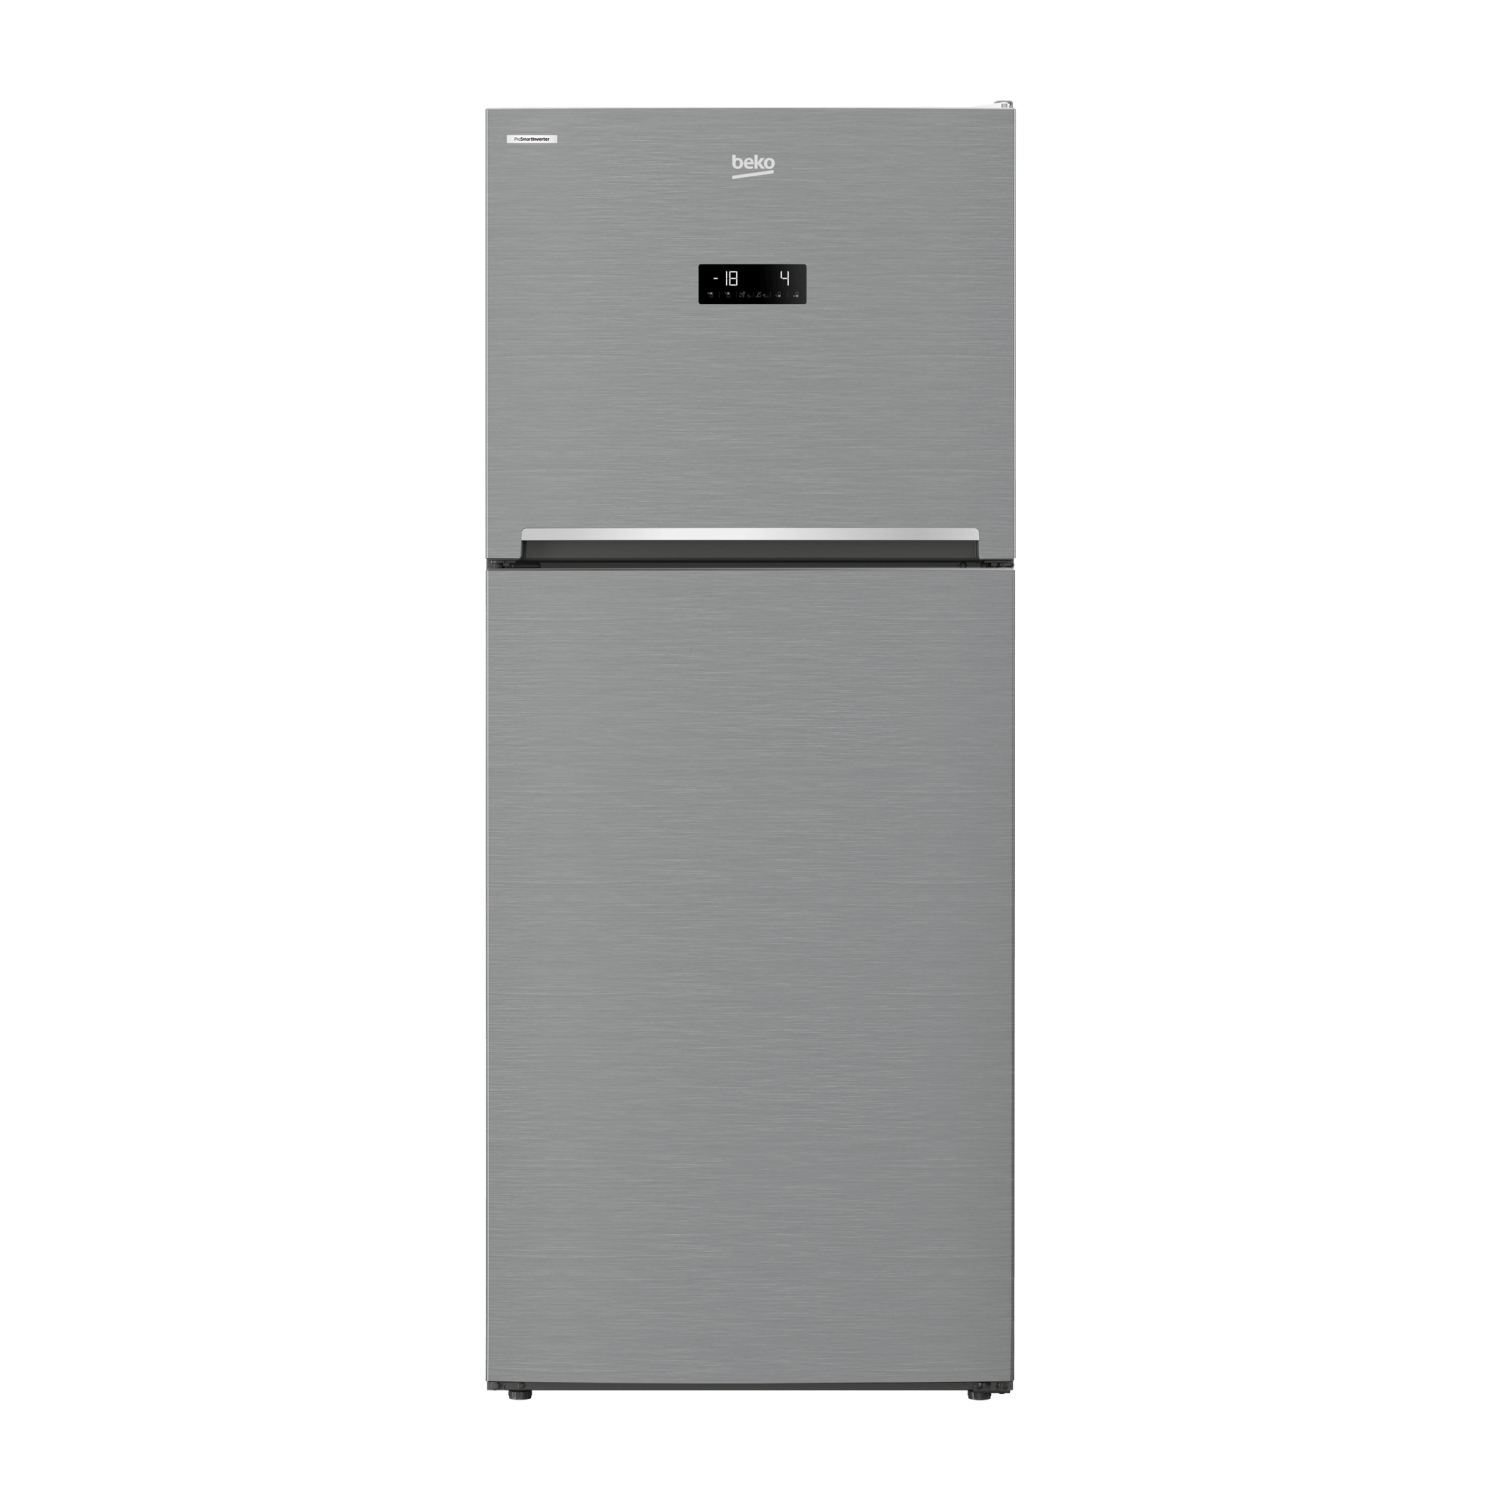 Tủ lạnh Beko Inverter 440 lít RDNT440E50VZX